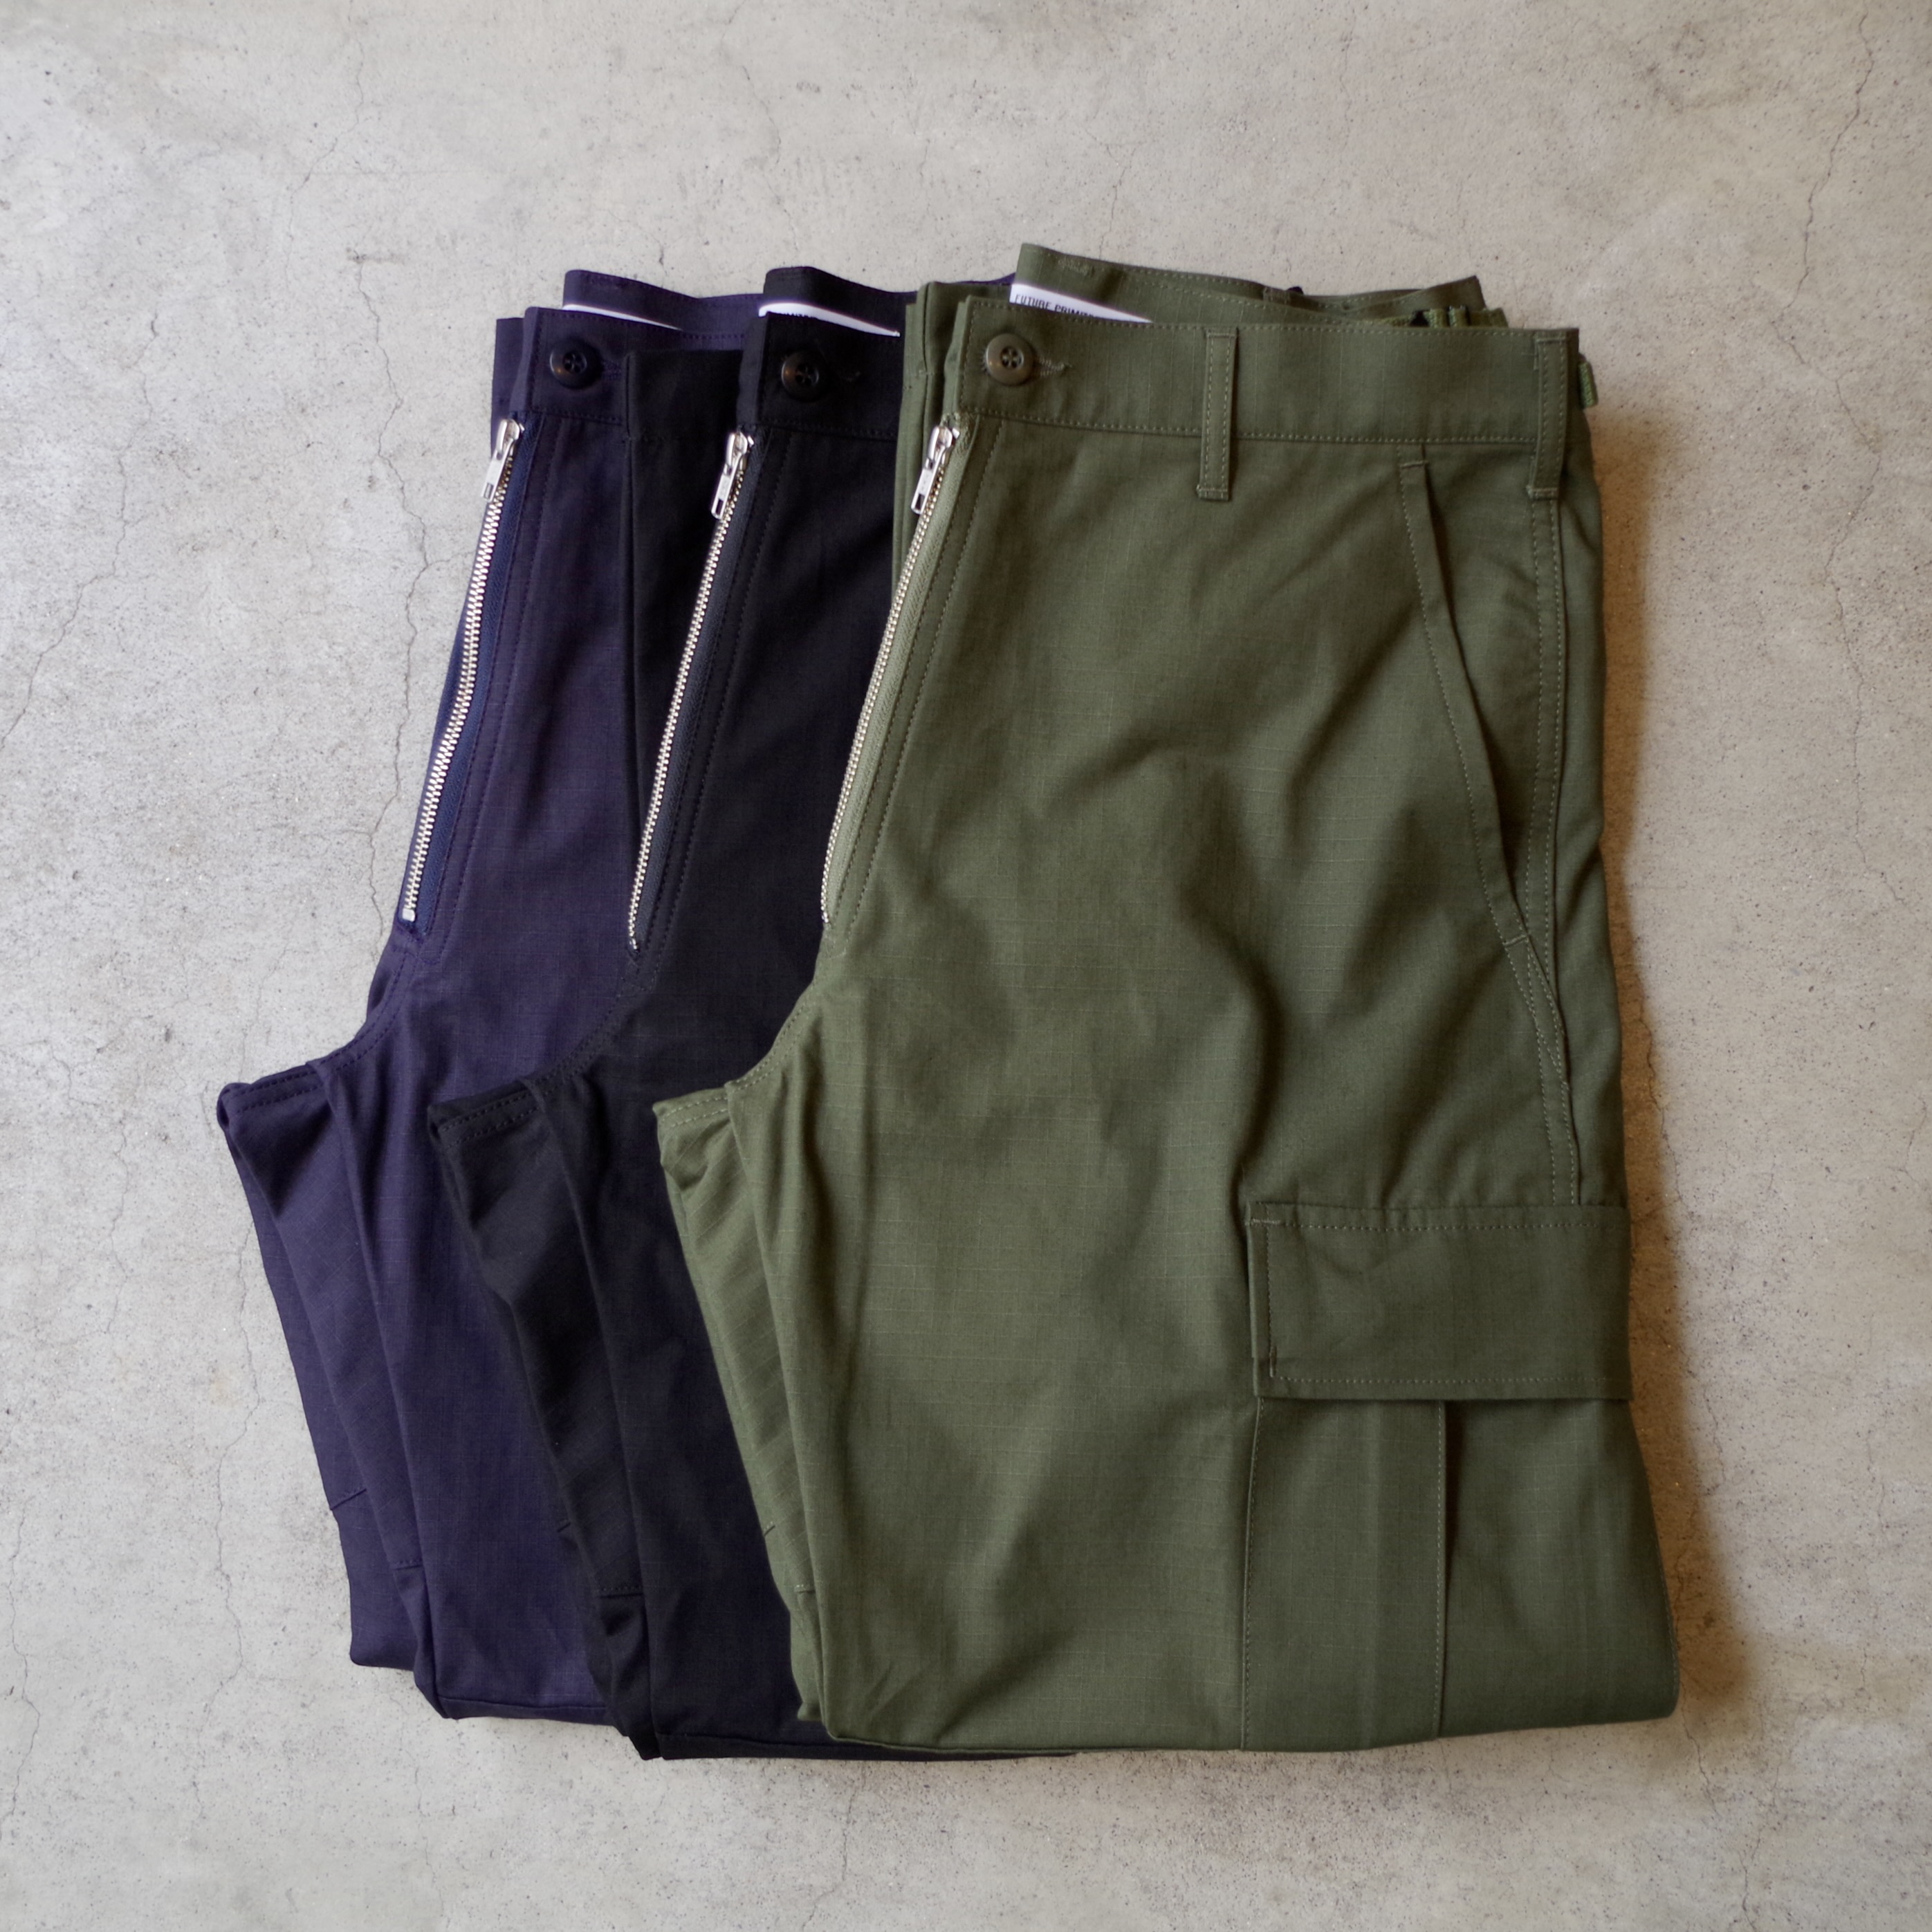 fp fz cargo pants / fp ivy shorts